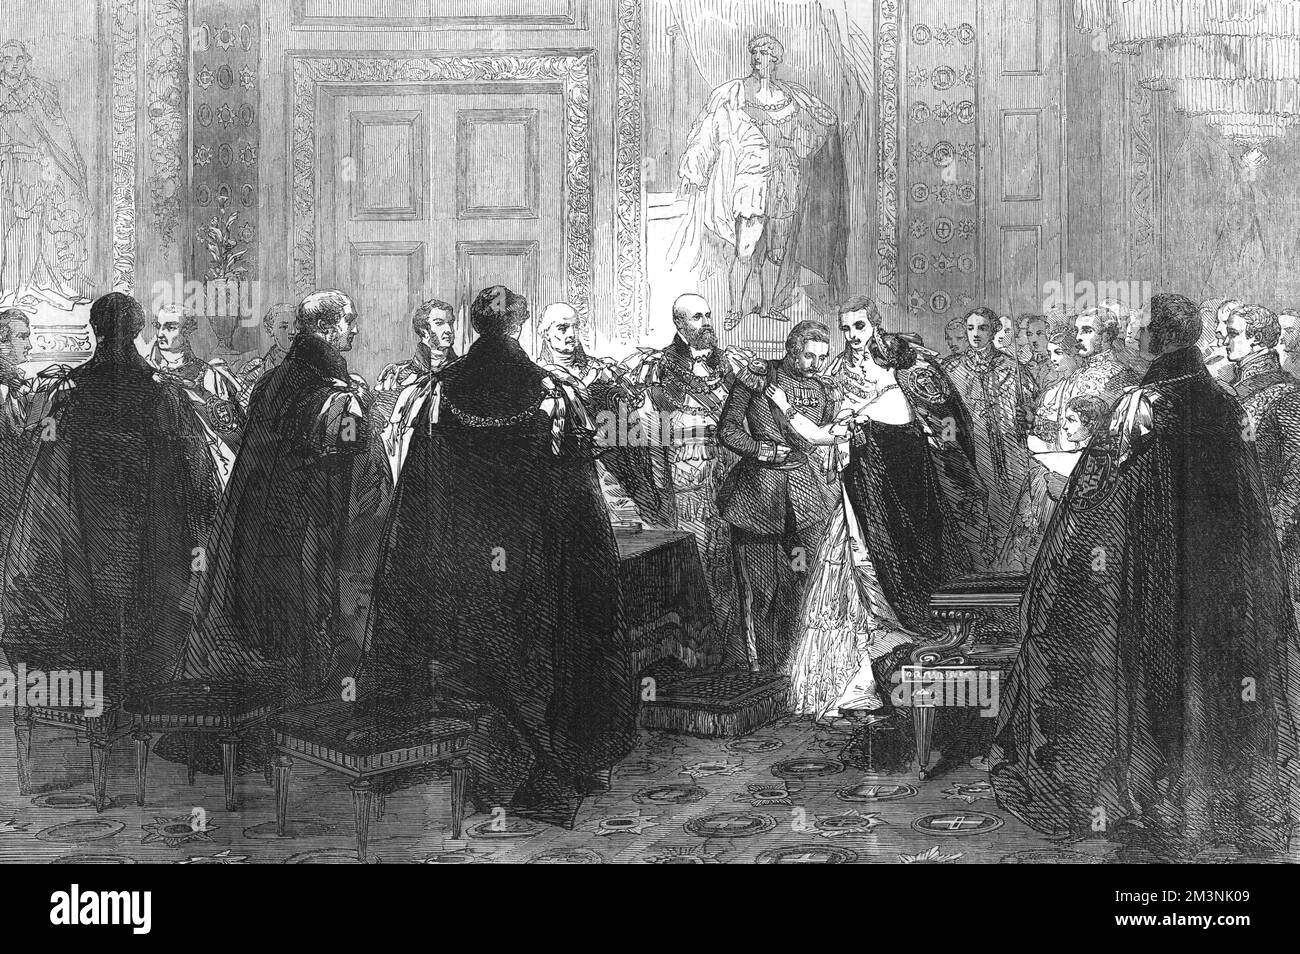 Investitura di sua altezza reale Federico Guglielmo di Prussia (1831 - 1888), (mostrato qui in uniforme prussiana) con l'Ordine del Garter, a seguito del suo matrimonio con Victoria (Vicky) la Principessa reale, figlia maggiore della Regina Vittoria. 1858 Foto Stock